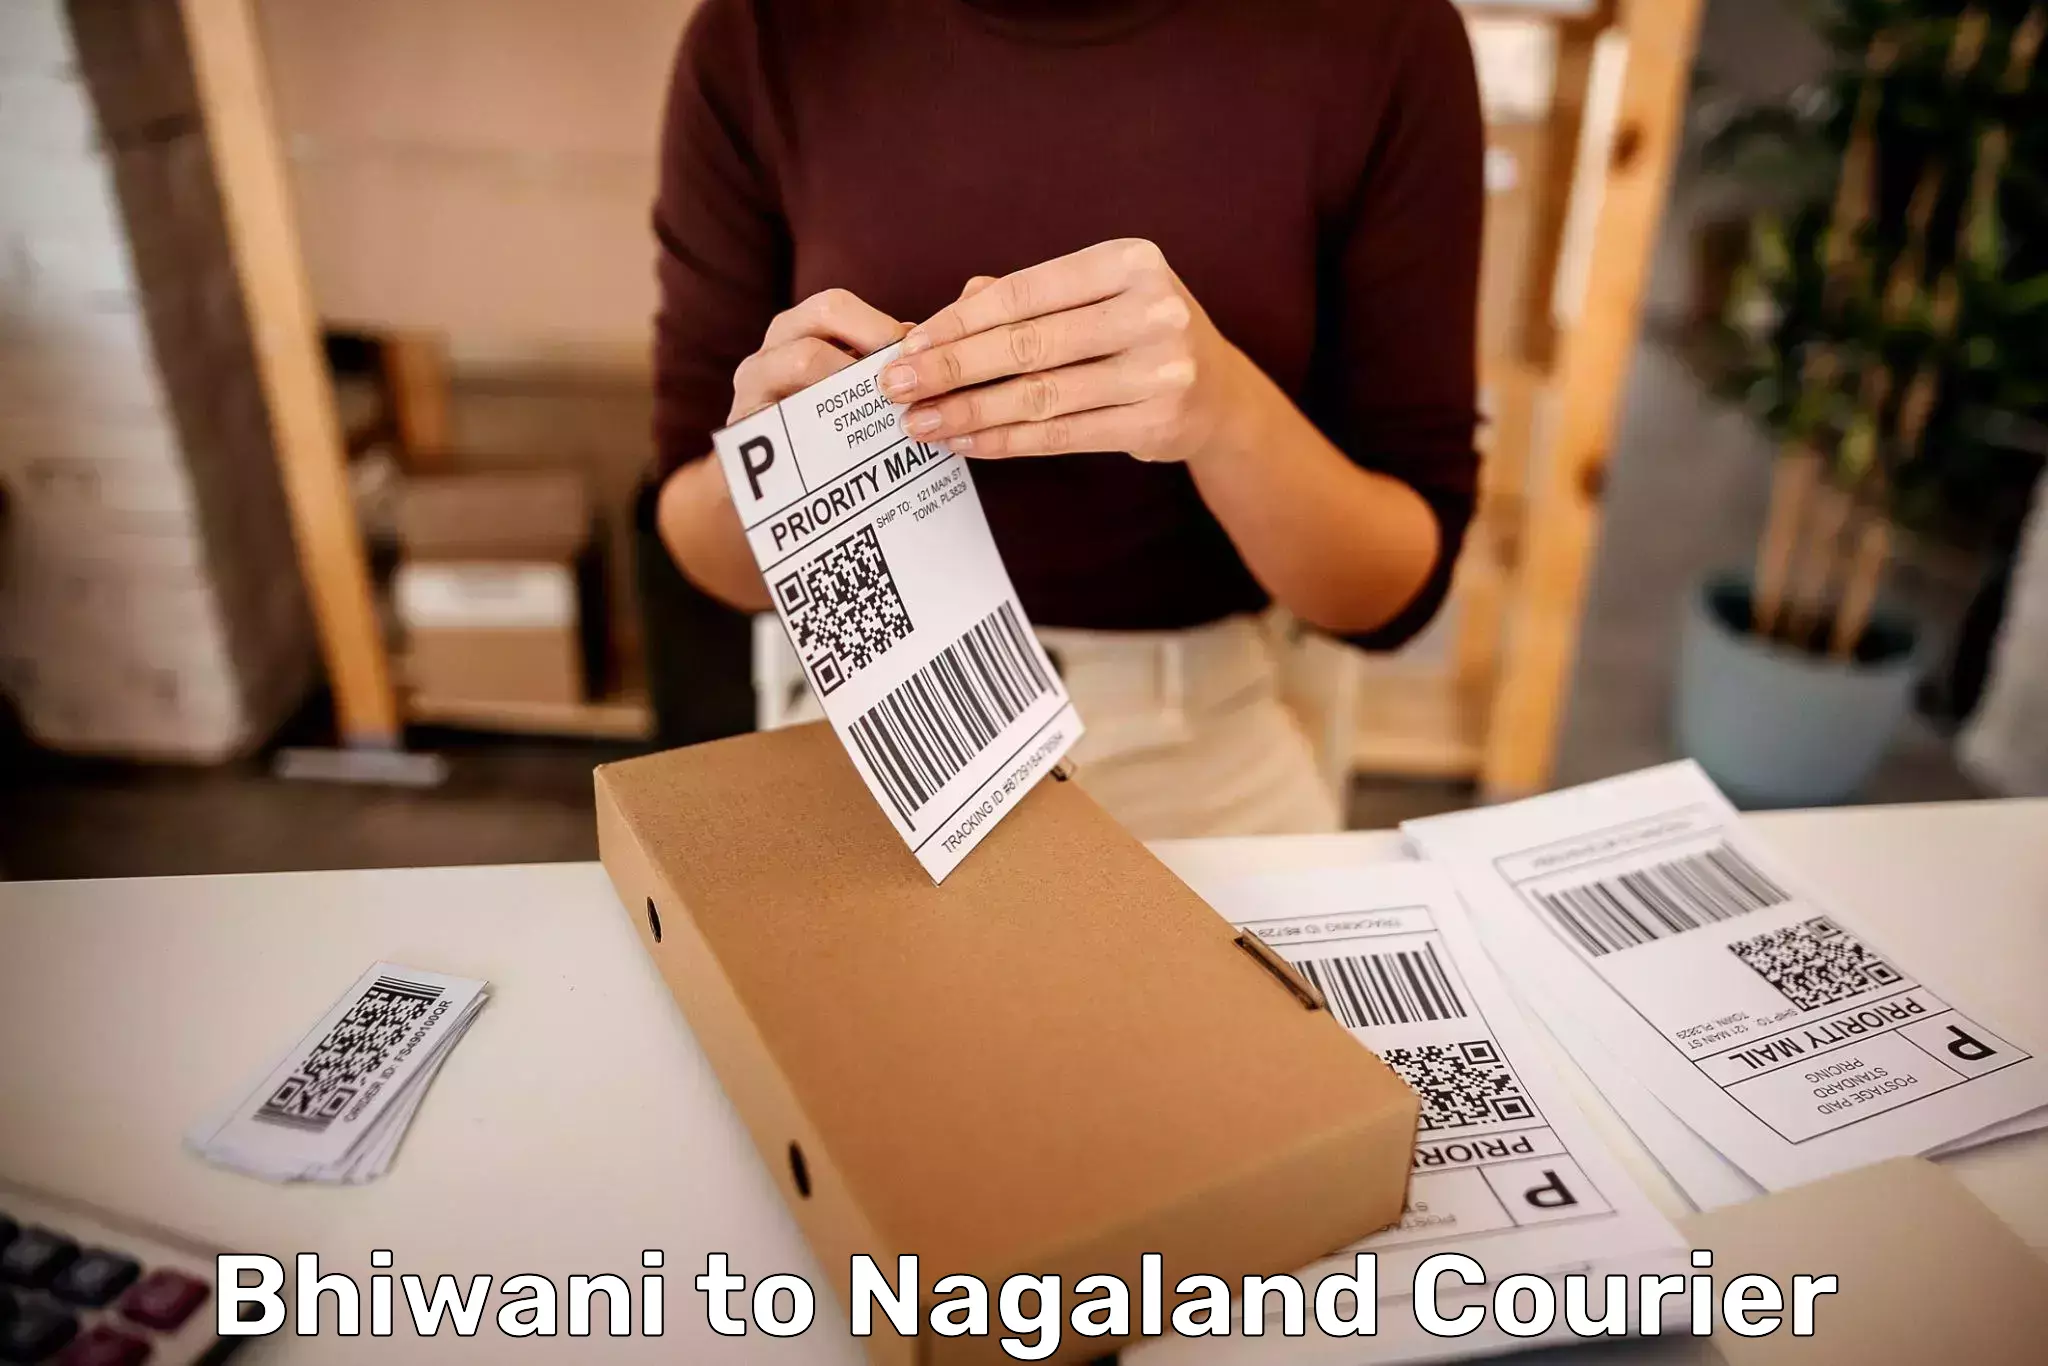 Luggage delivery optimization Bhiwani to Nagaland